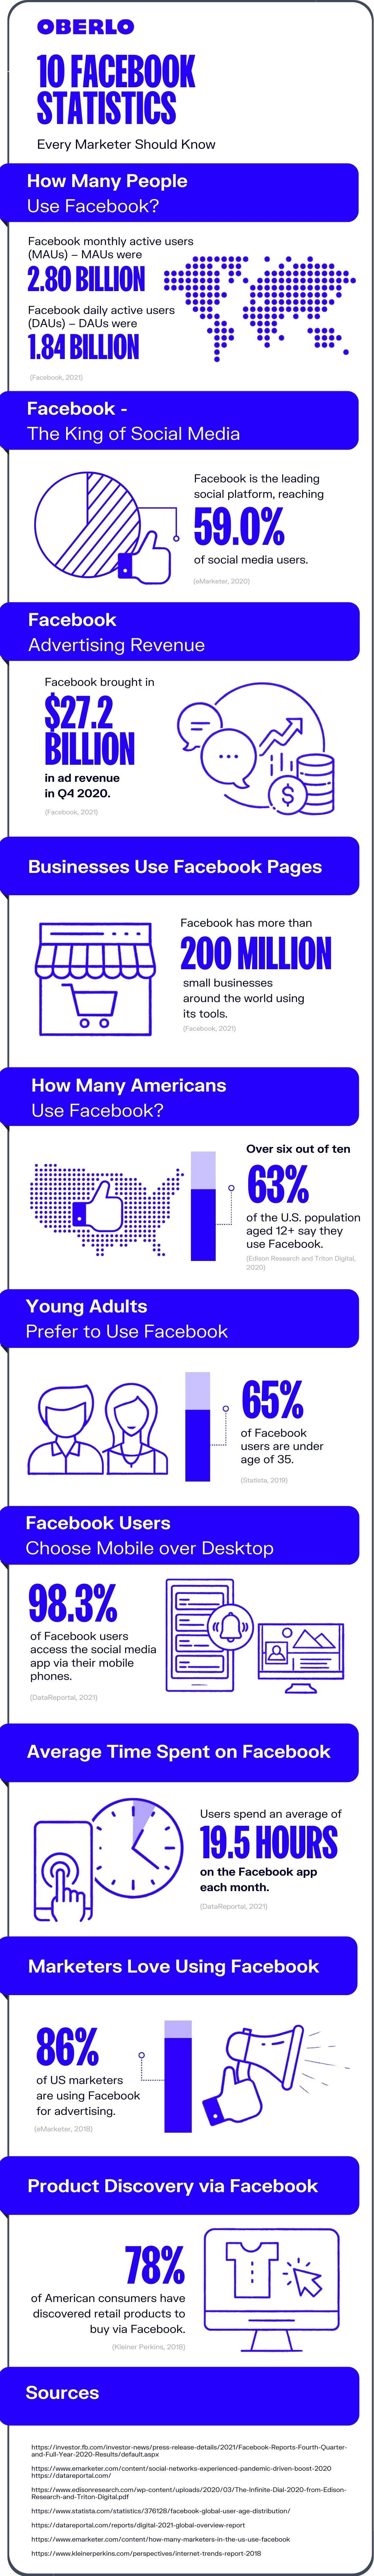 Facebook statistics full infographic